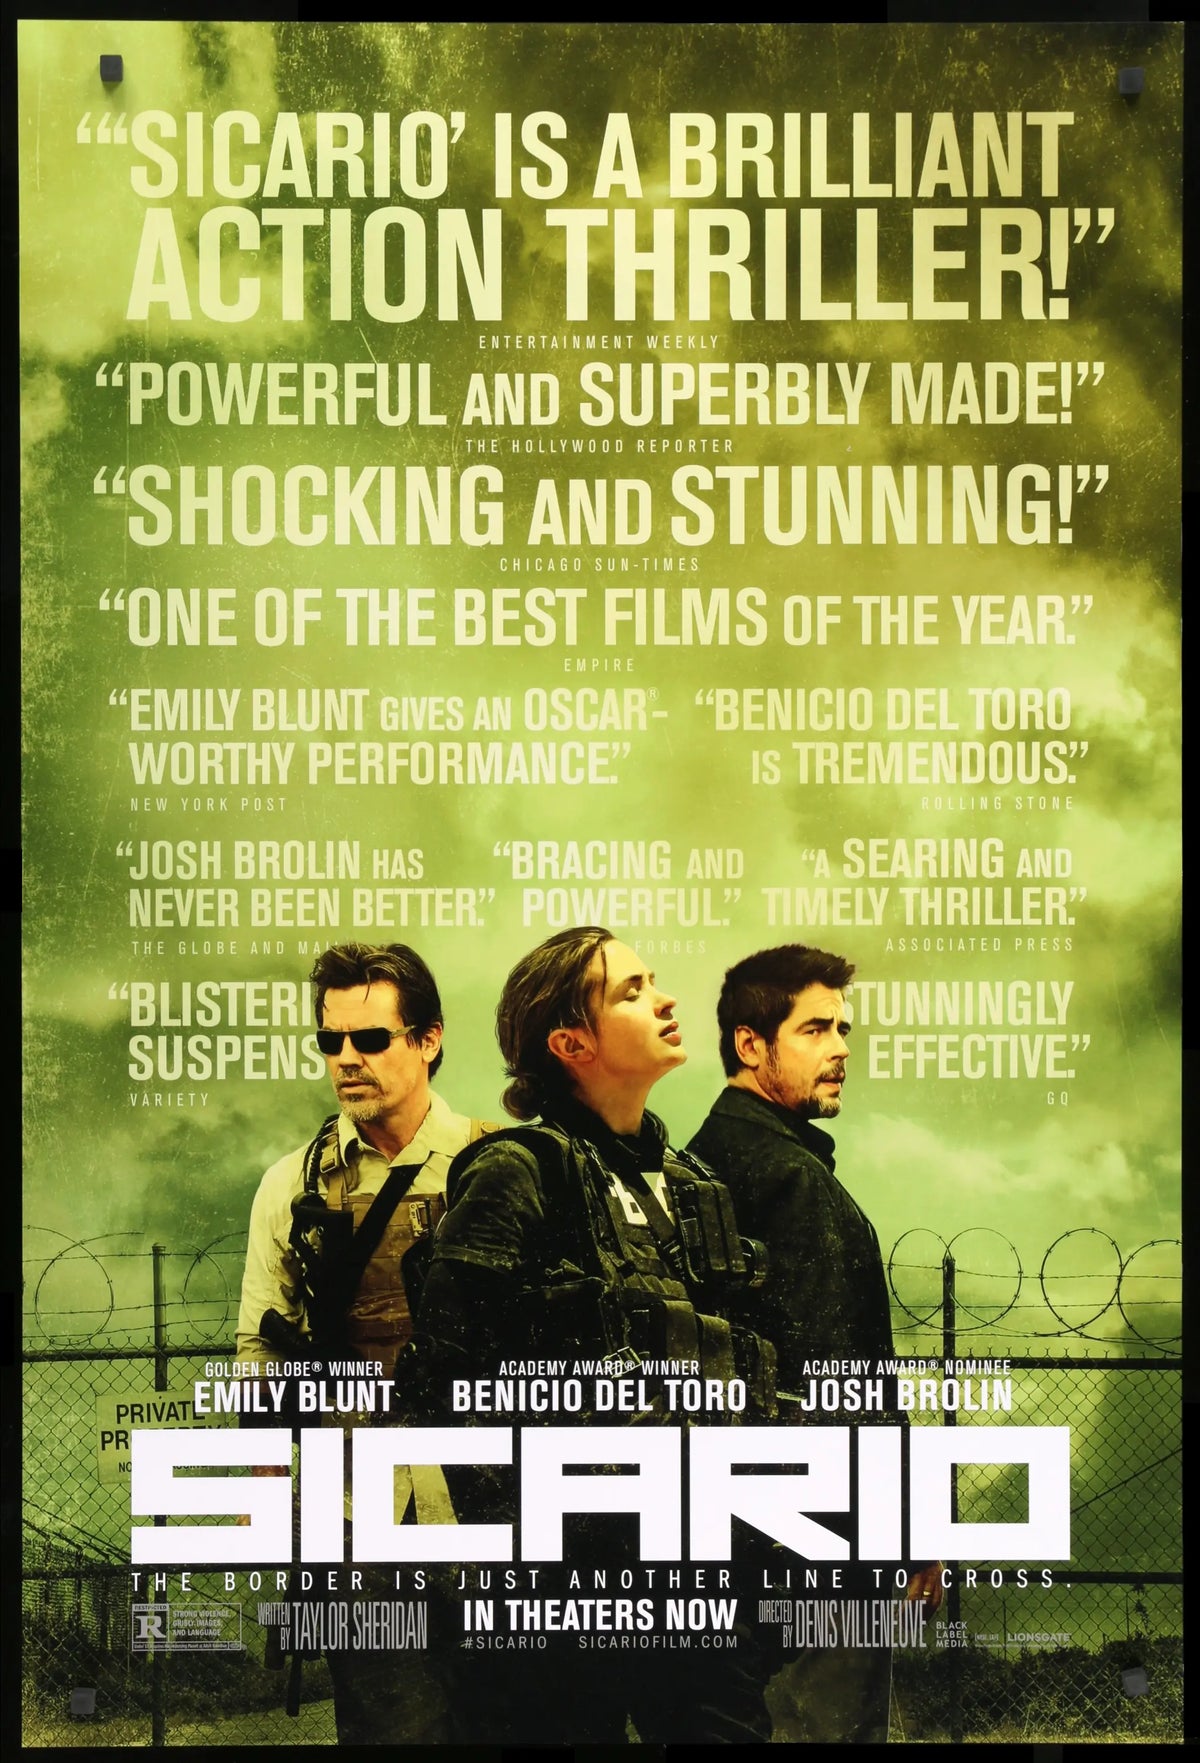 Sicario (2015) original movie poster for sale at Original Film Art